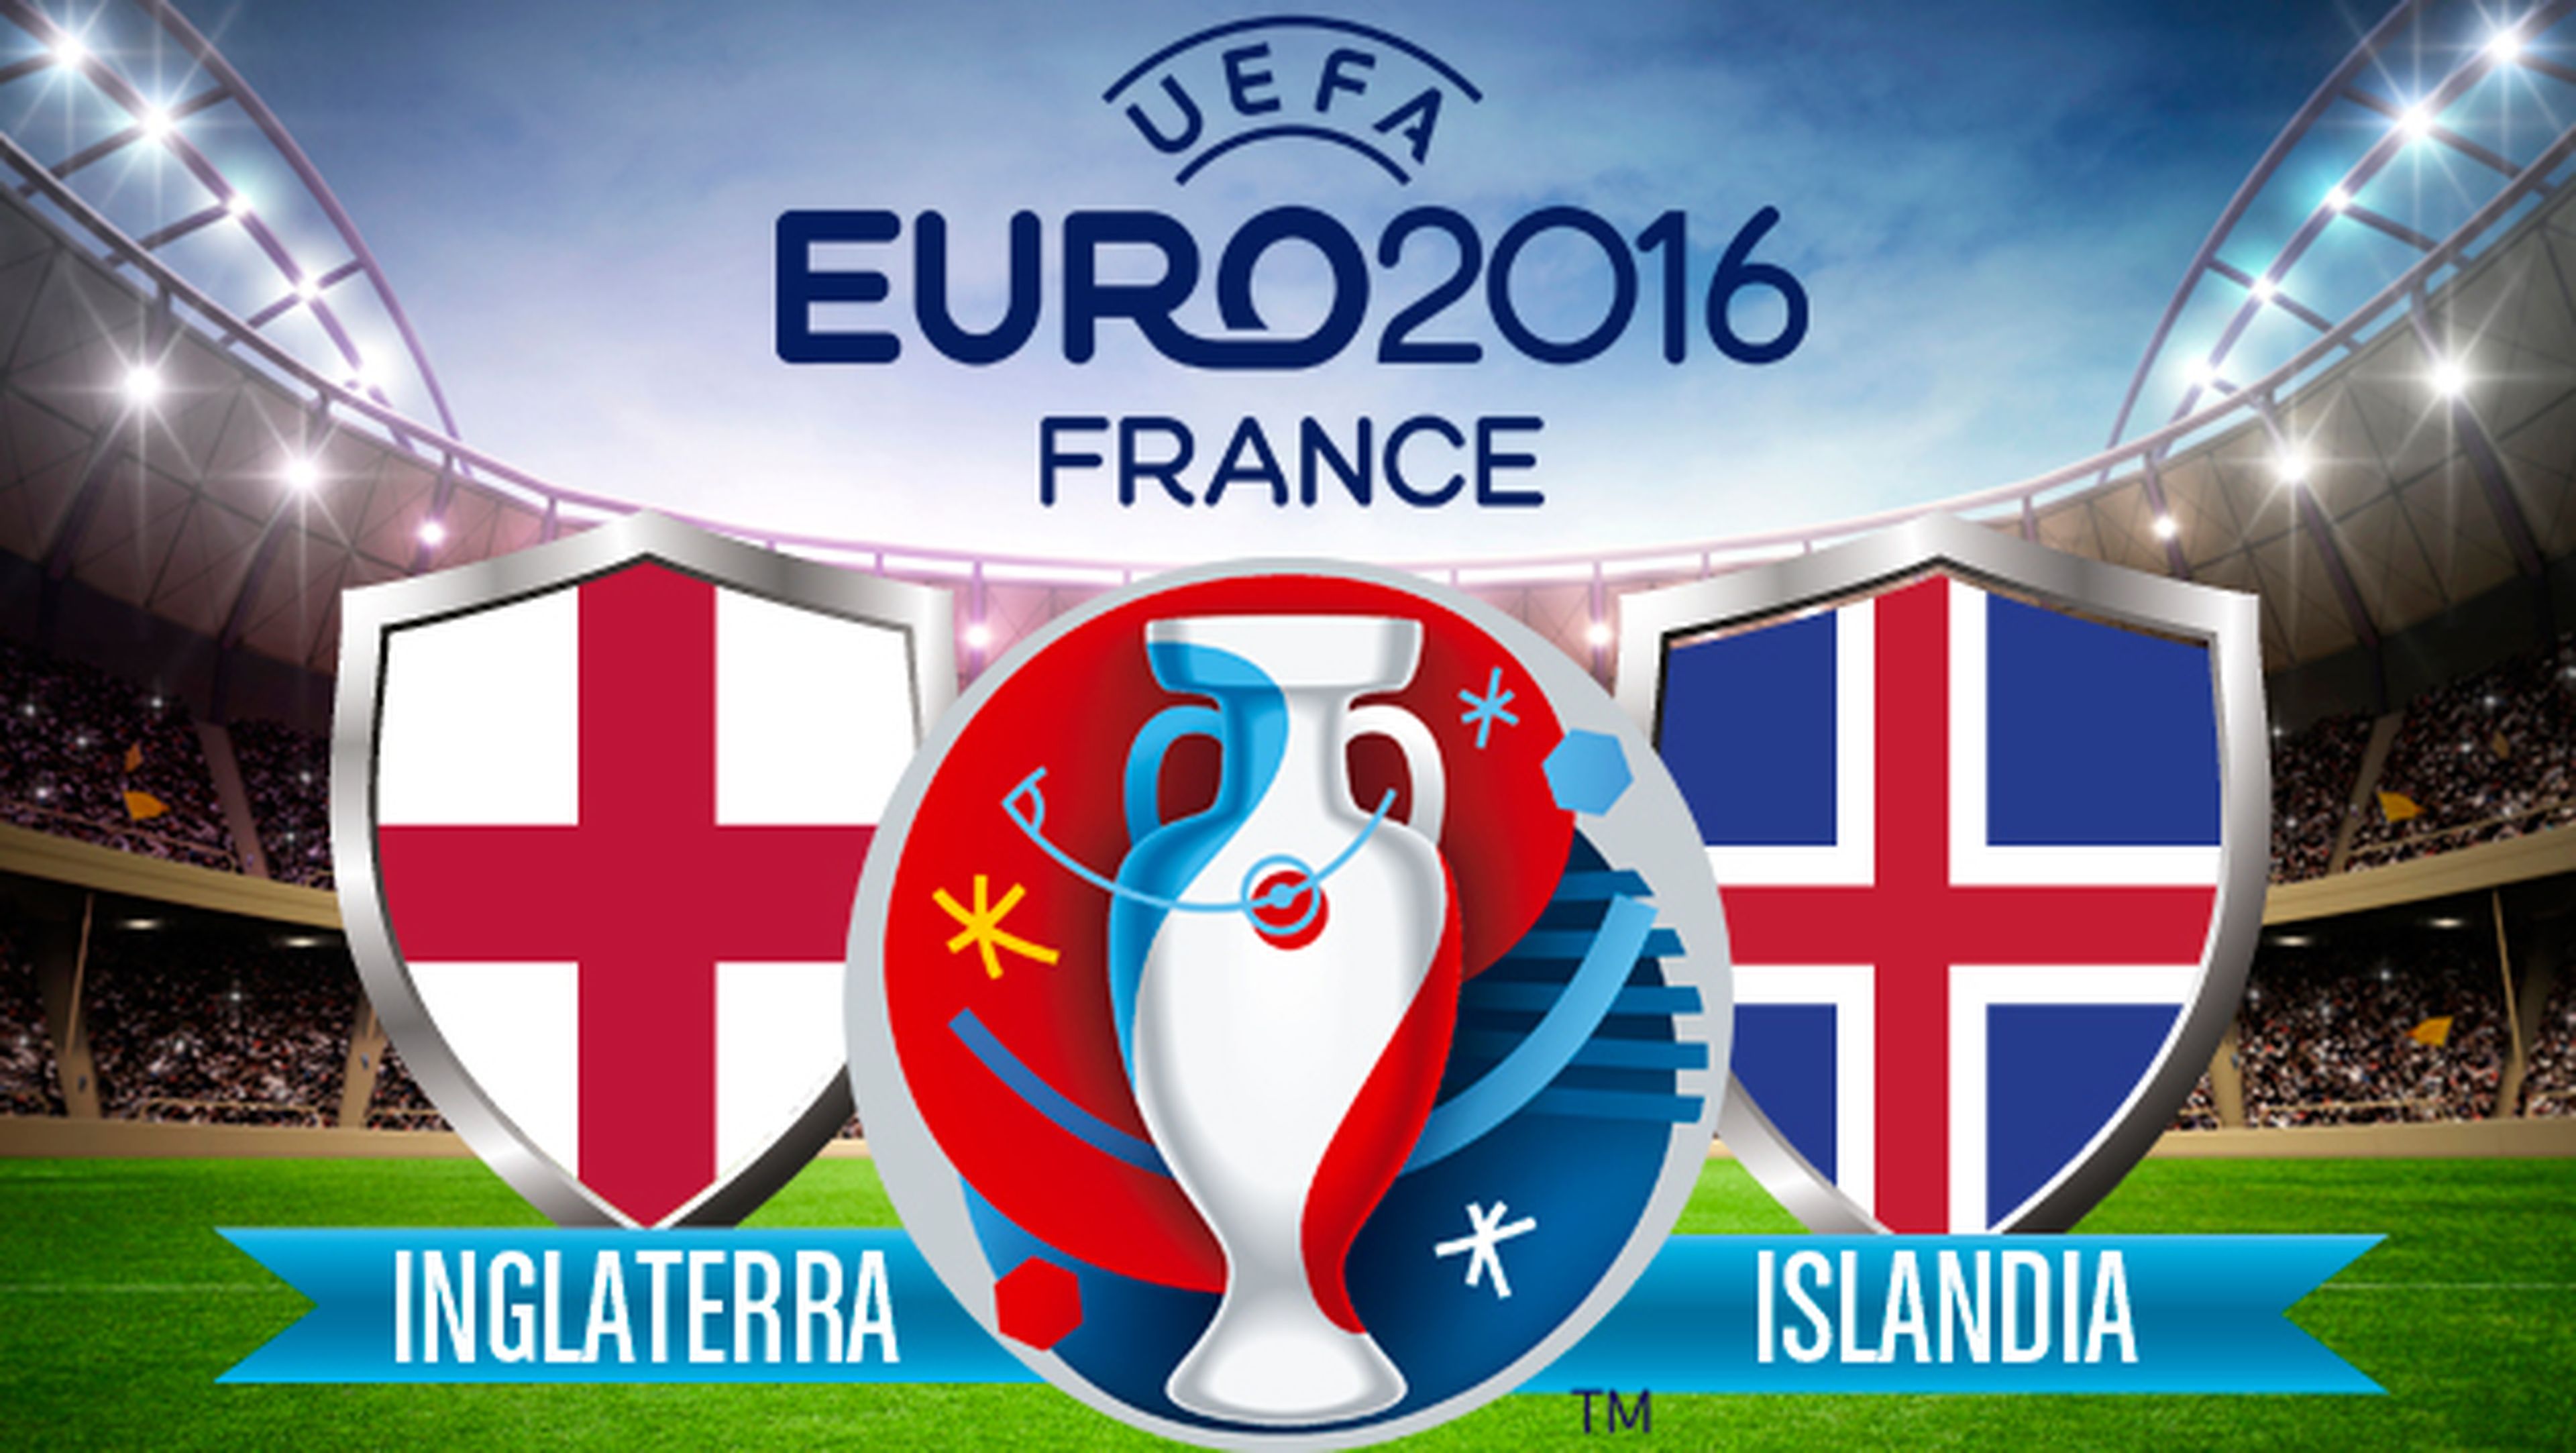 inglaterra islandia online en directo por streaming en Internet gratis de la eurocopa